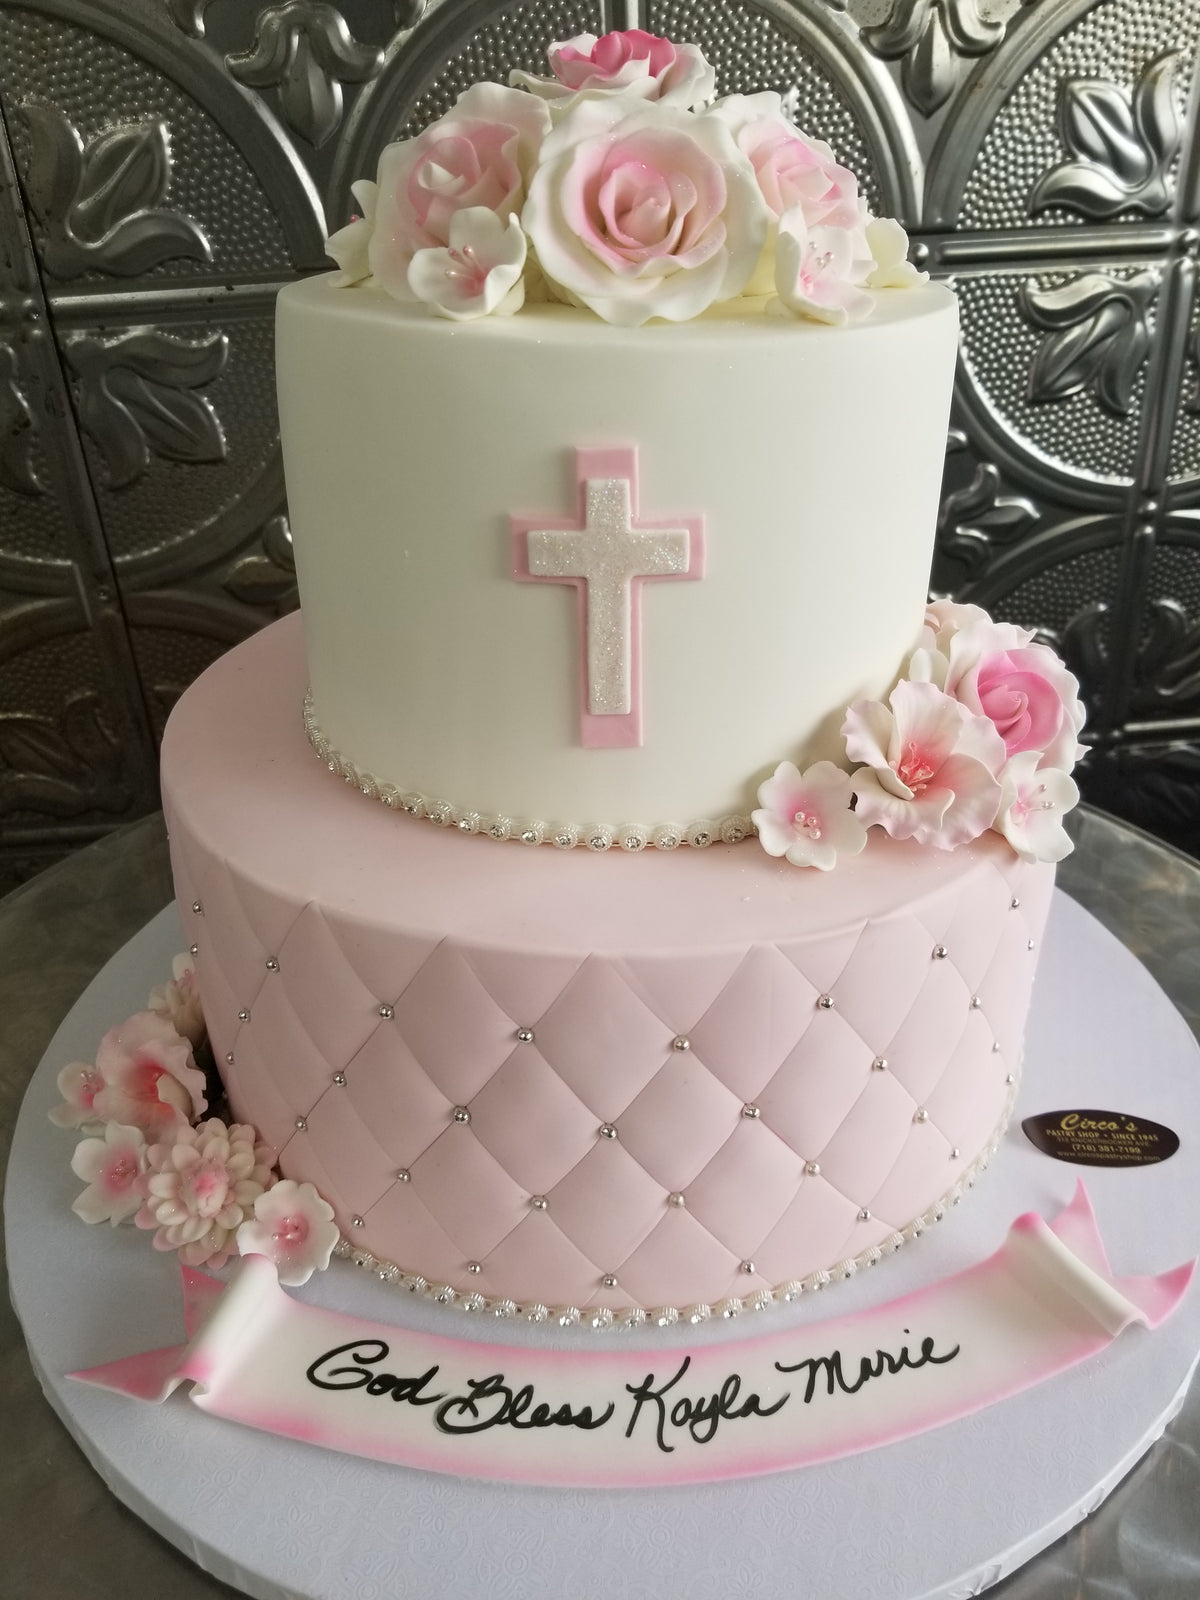 Girly religious cake. R065